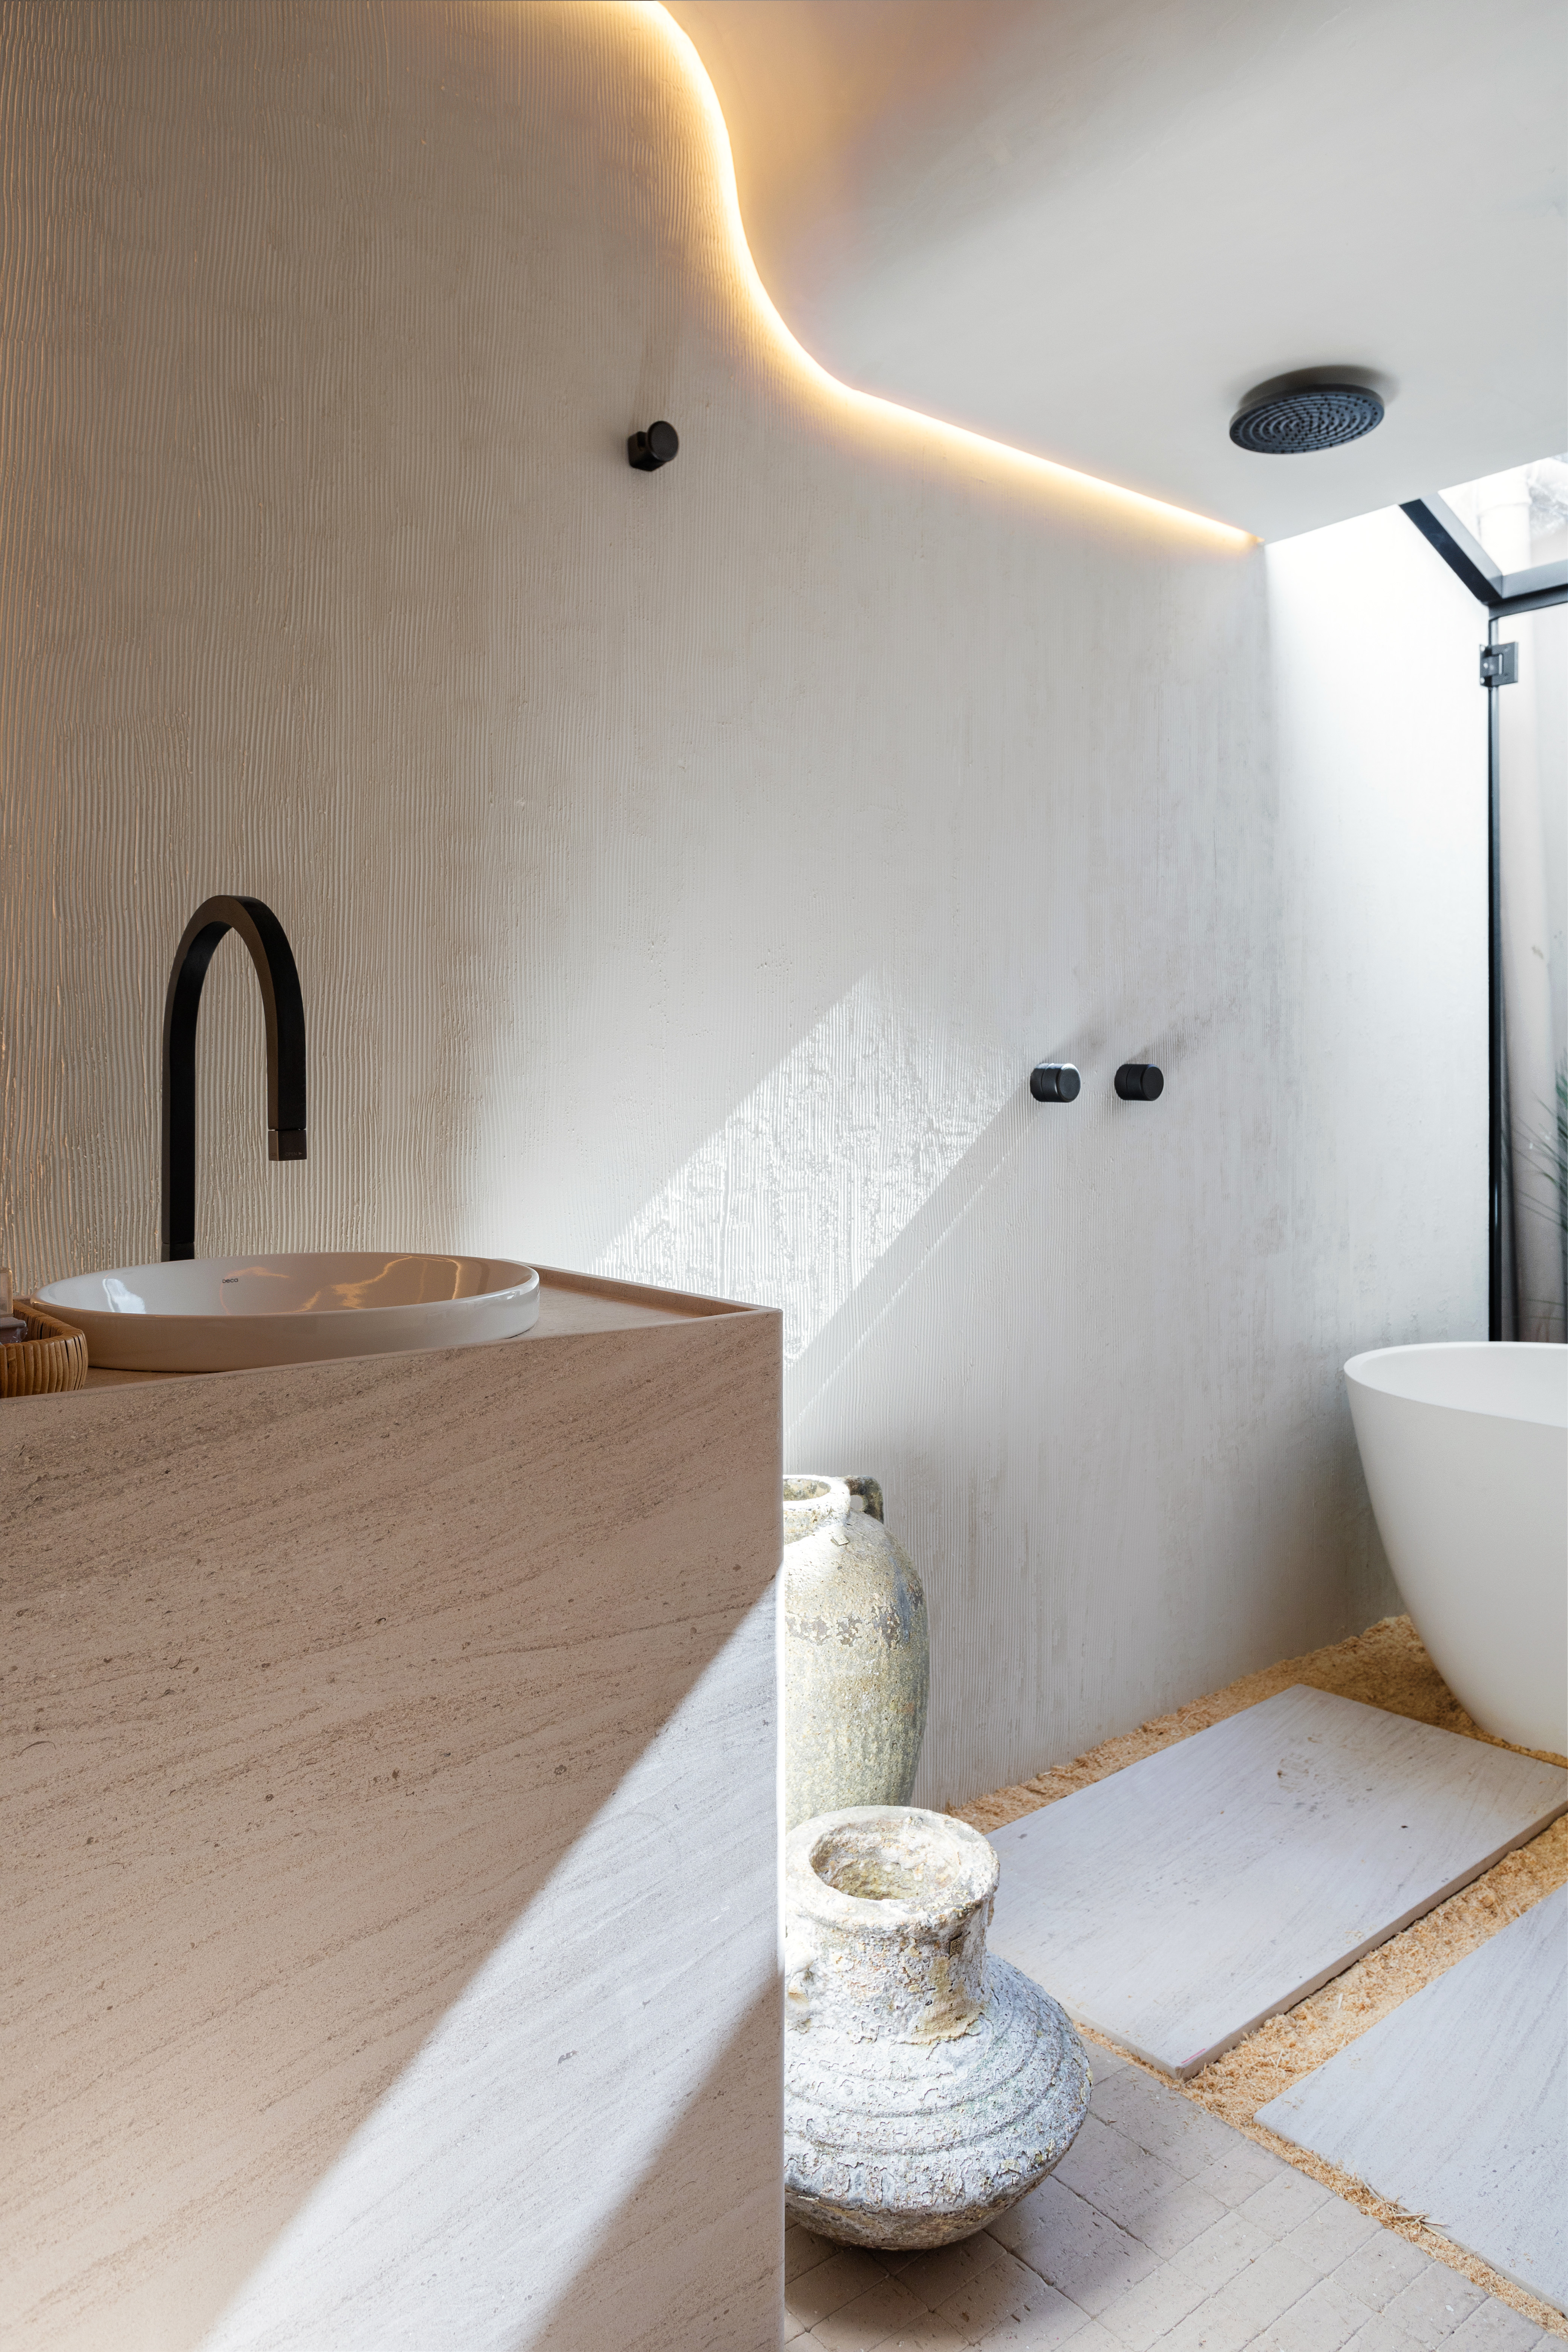 SPA em Casa: banheiro conecta arquitetura e natureza. Projeto de Bruno Dutkievicz e Raphael Meza. Na foto, teto curvado e com luz de LED embutida